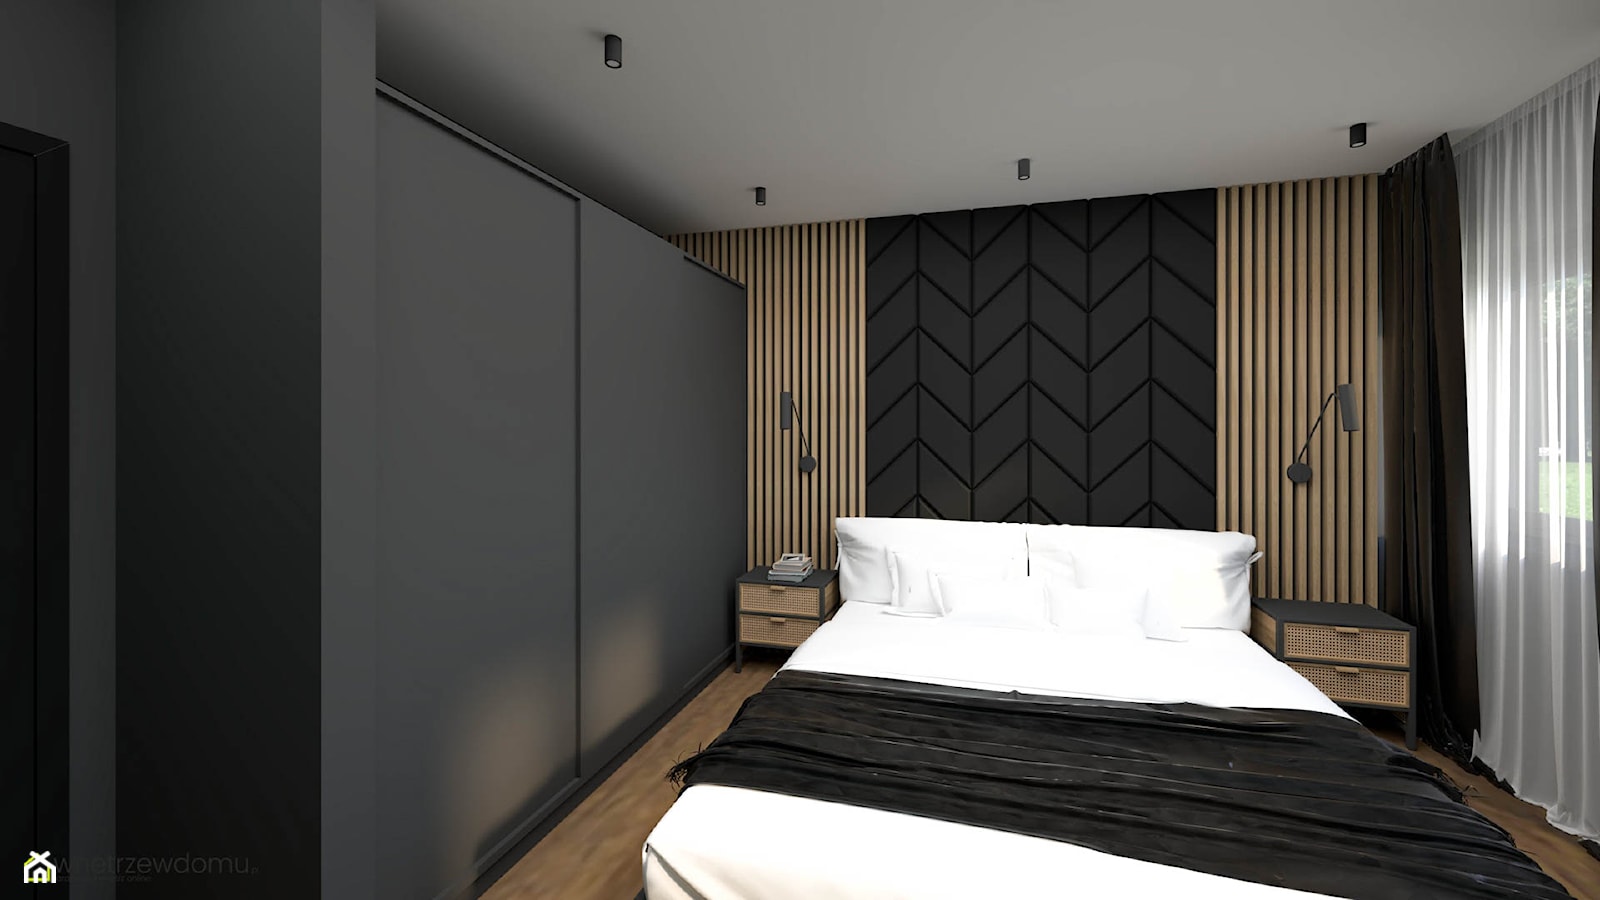 Ciemna sypialnia z tapetą z widokiem - zdjęcie od wnetrzewdomu - Homebook